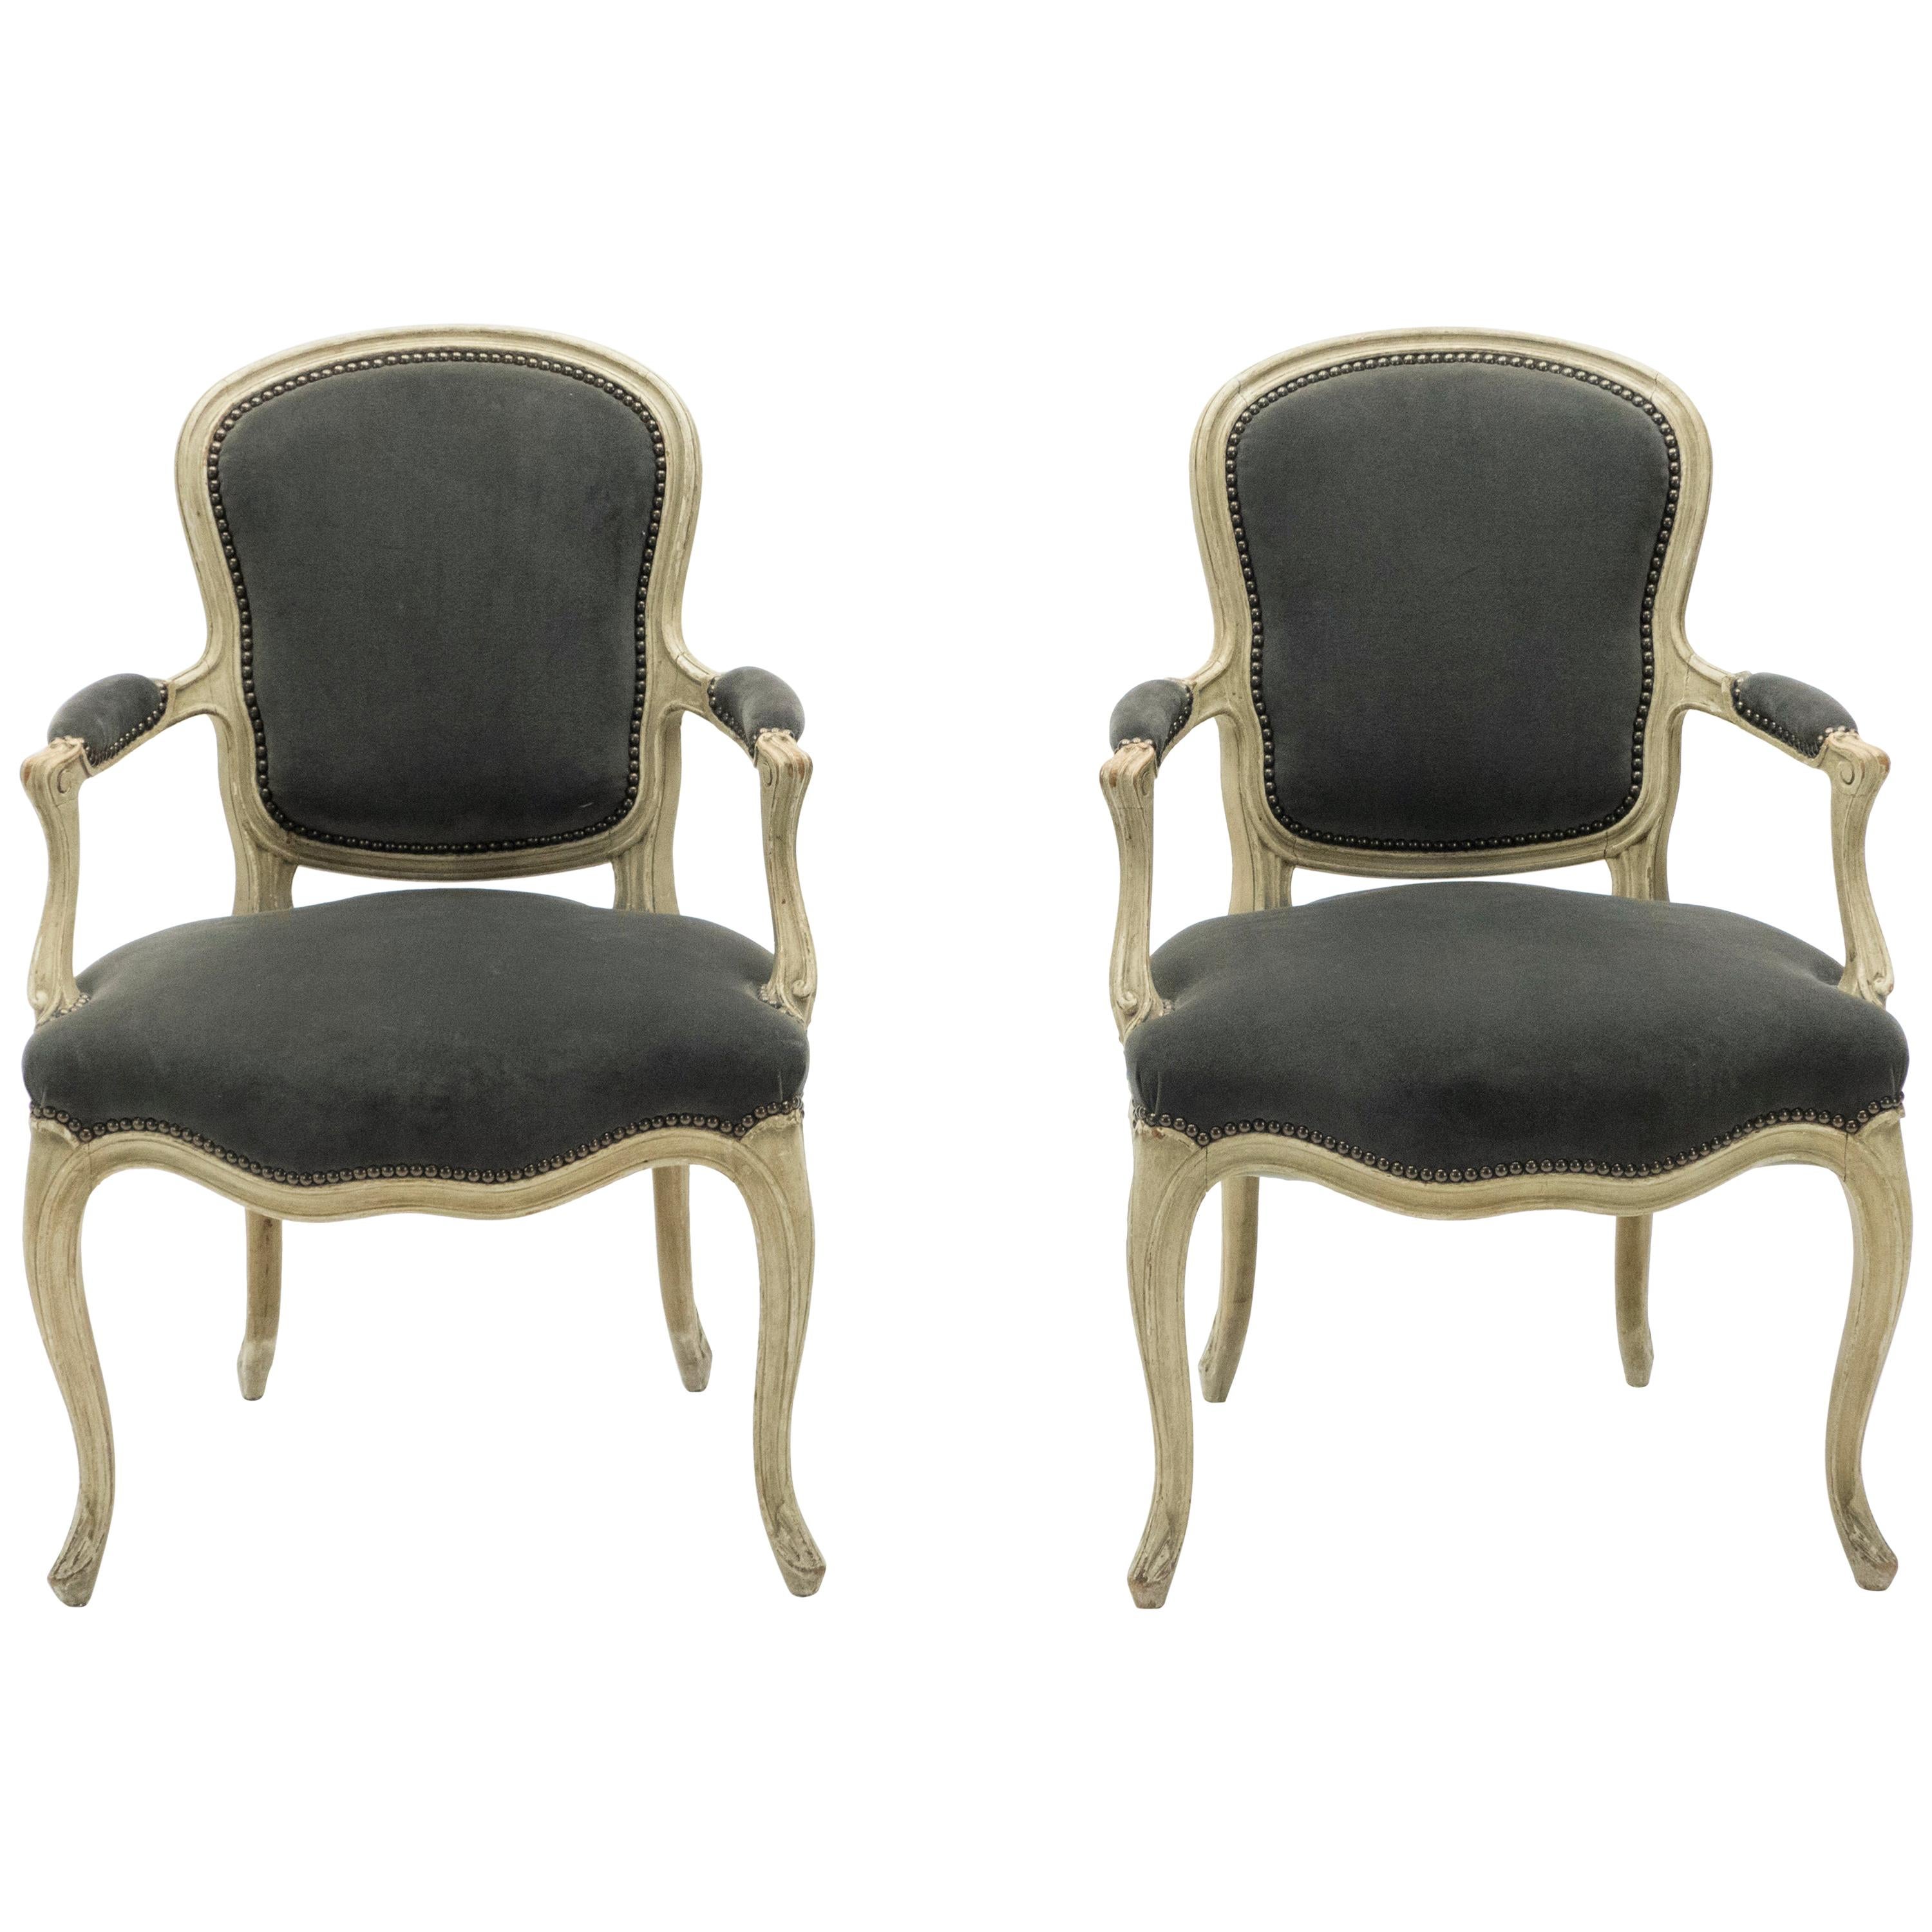 Seltenes Paar gestempelter neoklassizistischer Maison Jansen-Sessel im Stil Ludwigs XV., 1940er Jahre